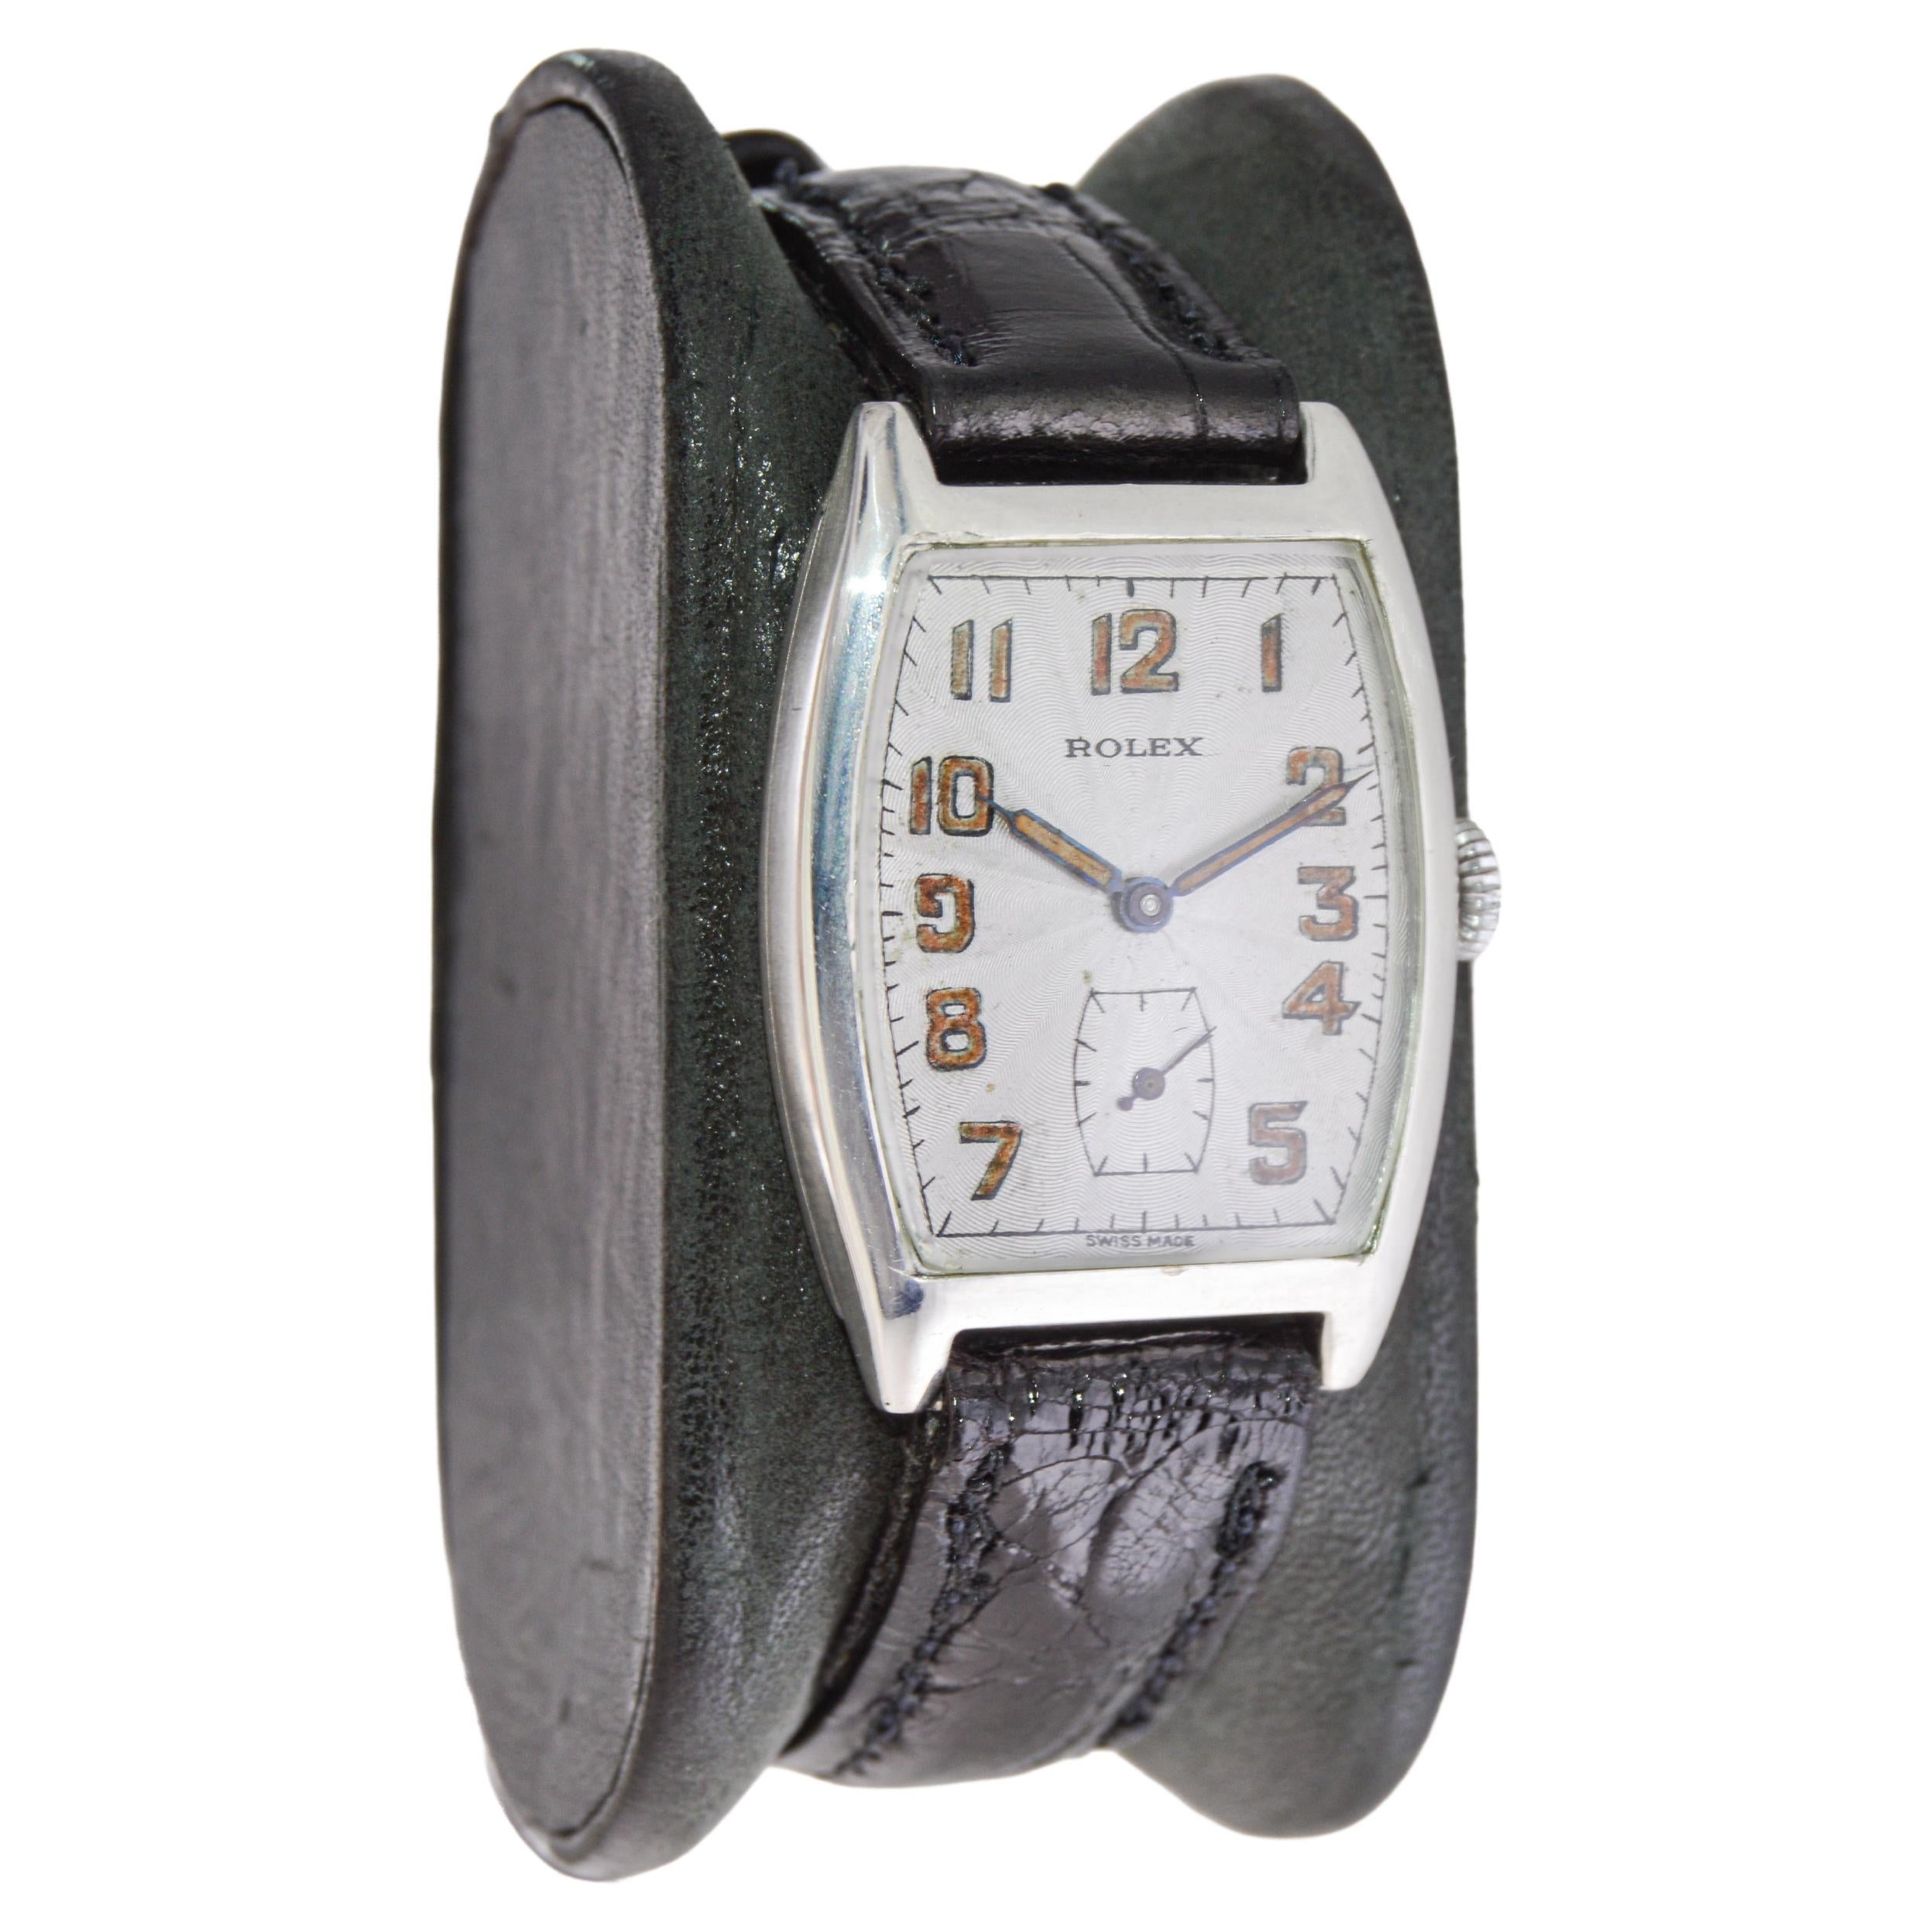 FABRIK / HAUS: Rolex Watch Company
STIL / REFERENZ: Tonneau / Referenz 575
METALL / MATERIAL: Sterling Silber
CIRCA / JAHR: 1920er Jahre
ABMESSUNGEN / GRÖSSE: Länge 36 X Breite 26mm 
UHRWERK / KALIBER: Handaufzug / 15 Jewels / Kaliber 
ZIFFERBLATT /